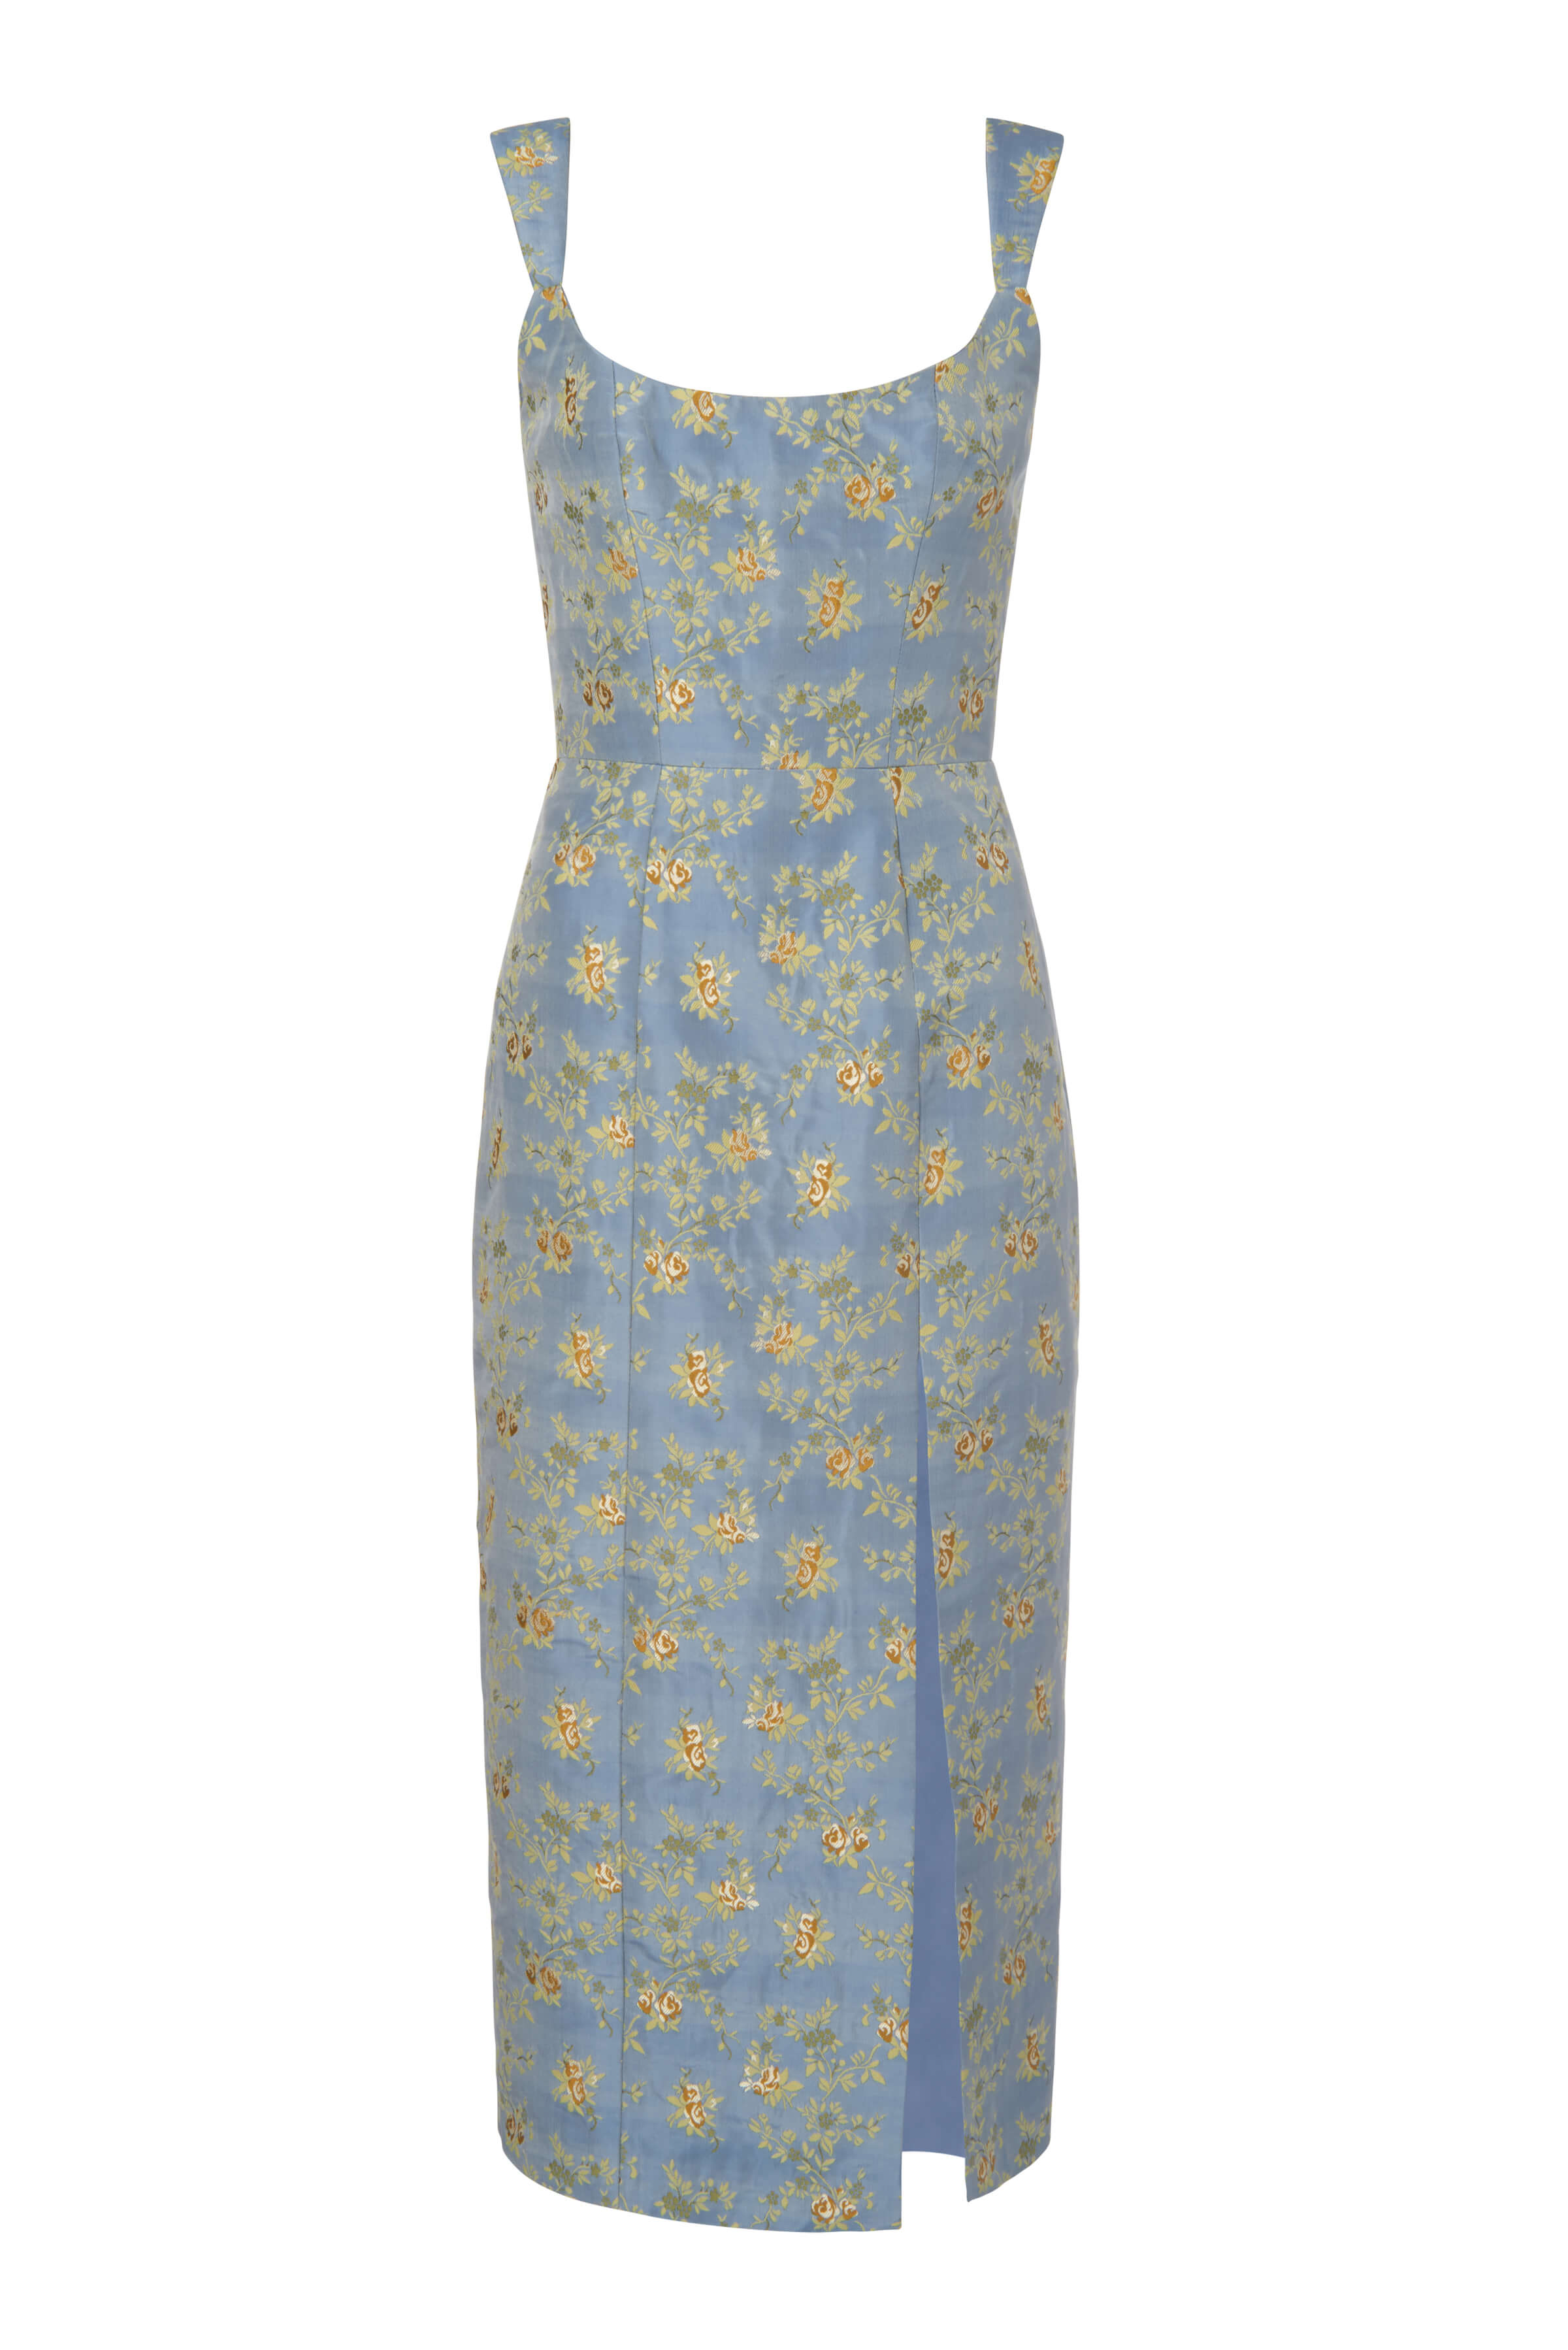 Claudette Blue Floral Corset Dress